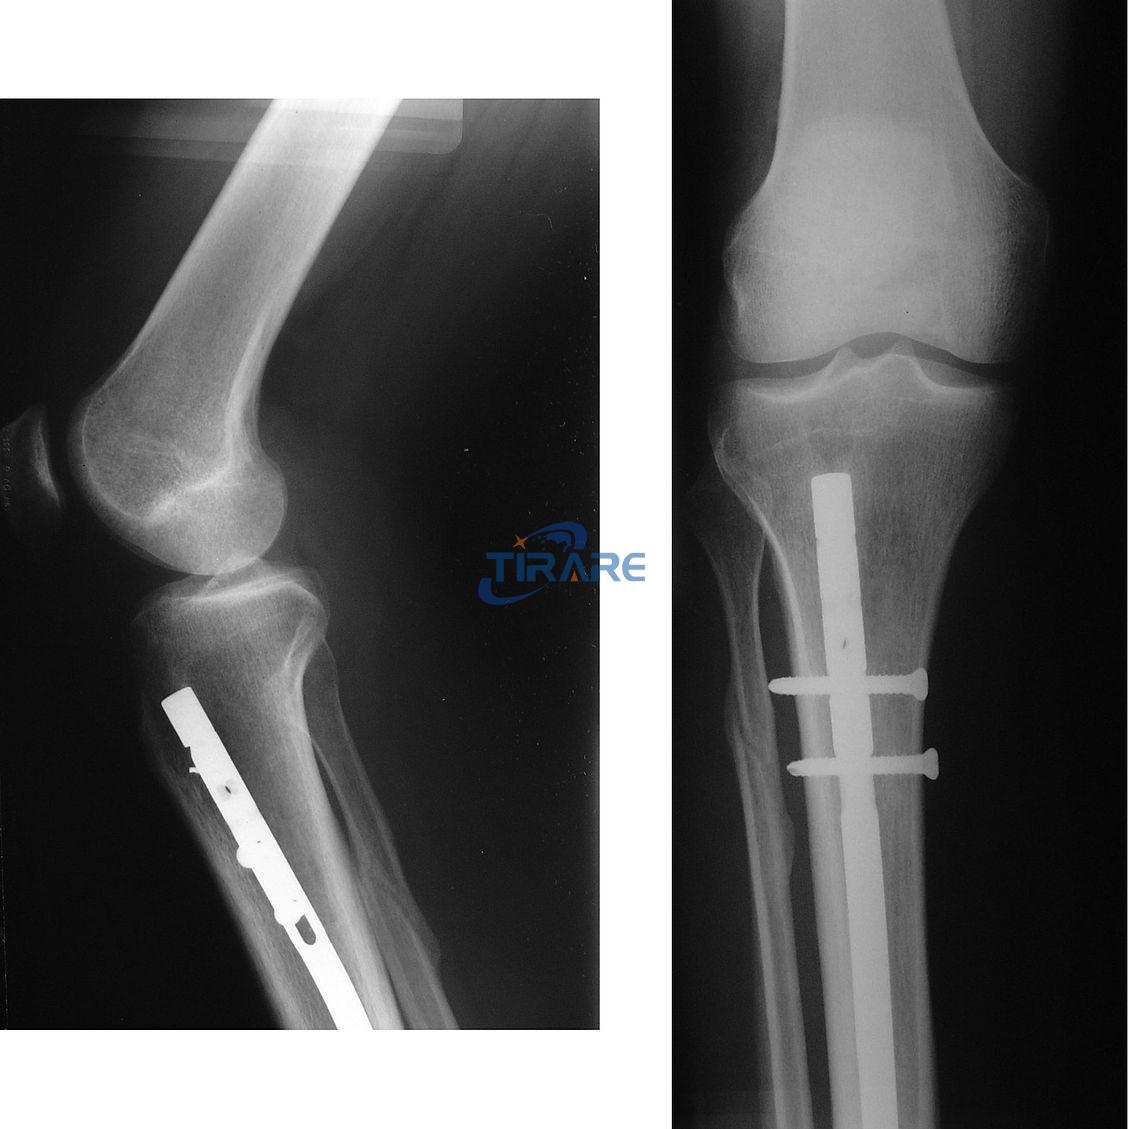 Titanium rod in leg